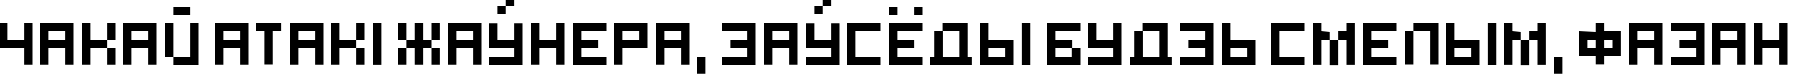 Пример написания шрифтом hooge 05_55 Cyr2 текста на белорусском